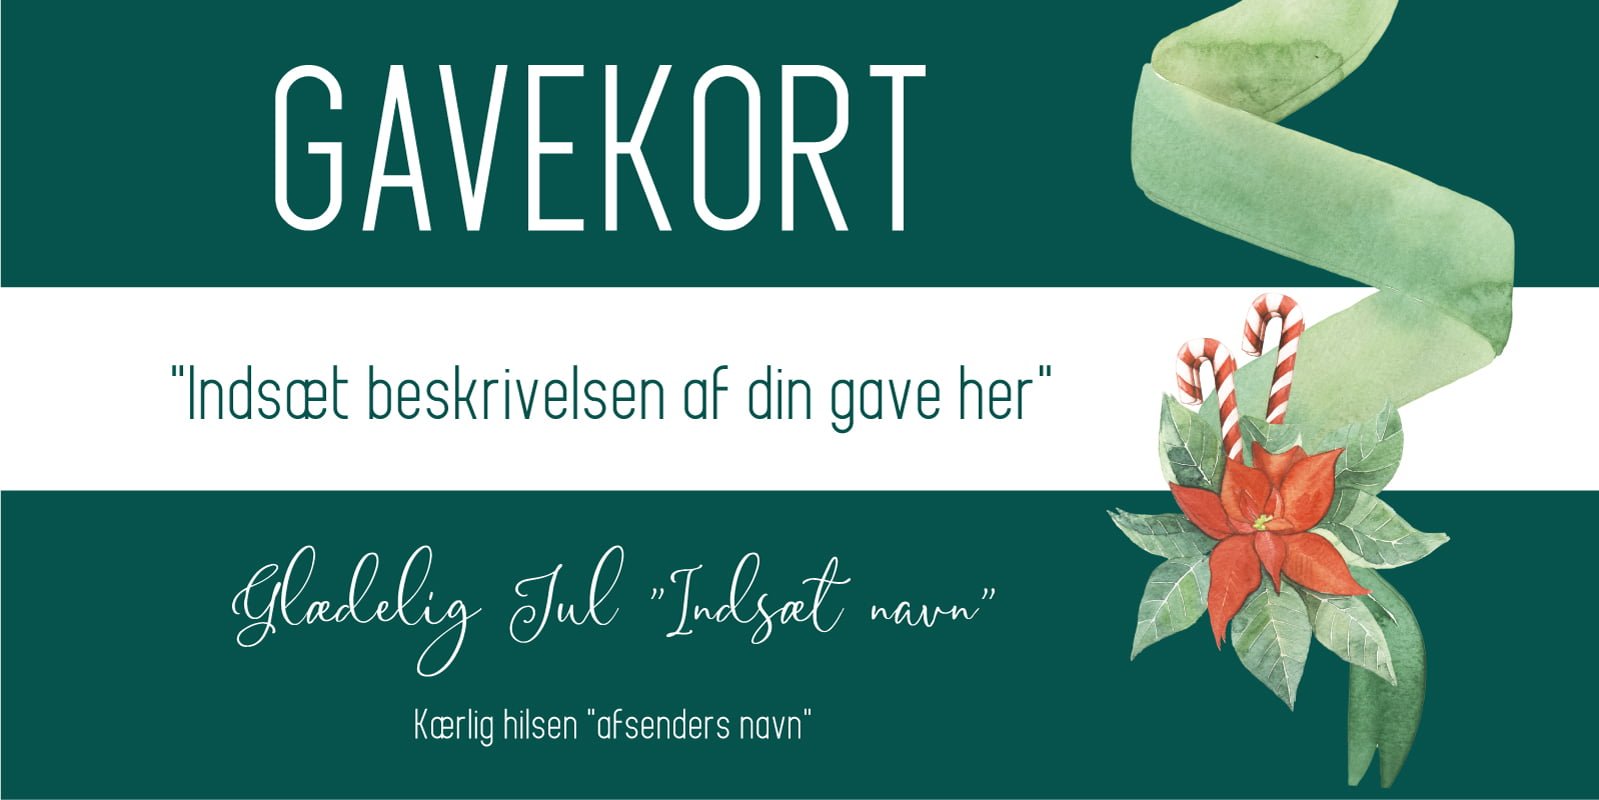 Gavekort-jul